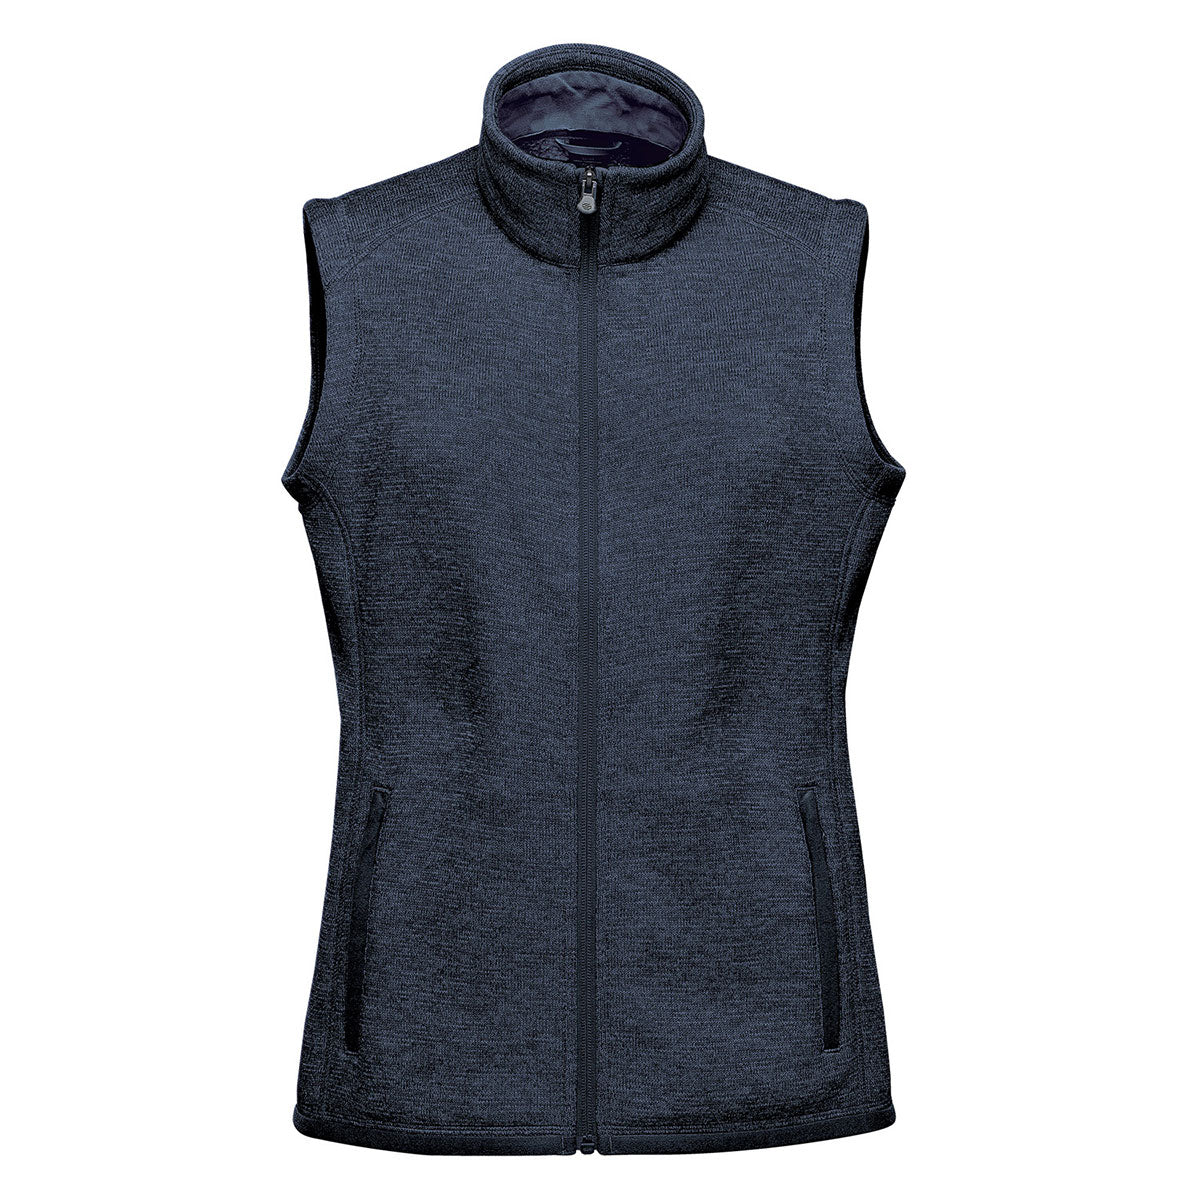 Women's Tangerine Brand Multicolor Full Zip Puffer Vest Size M RN# 83814